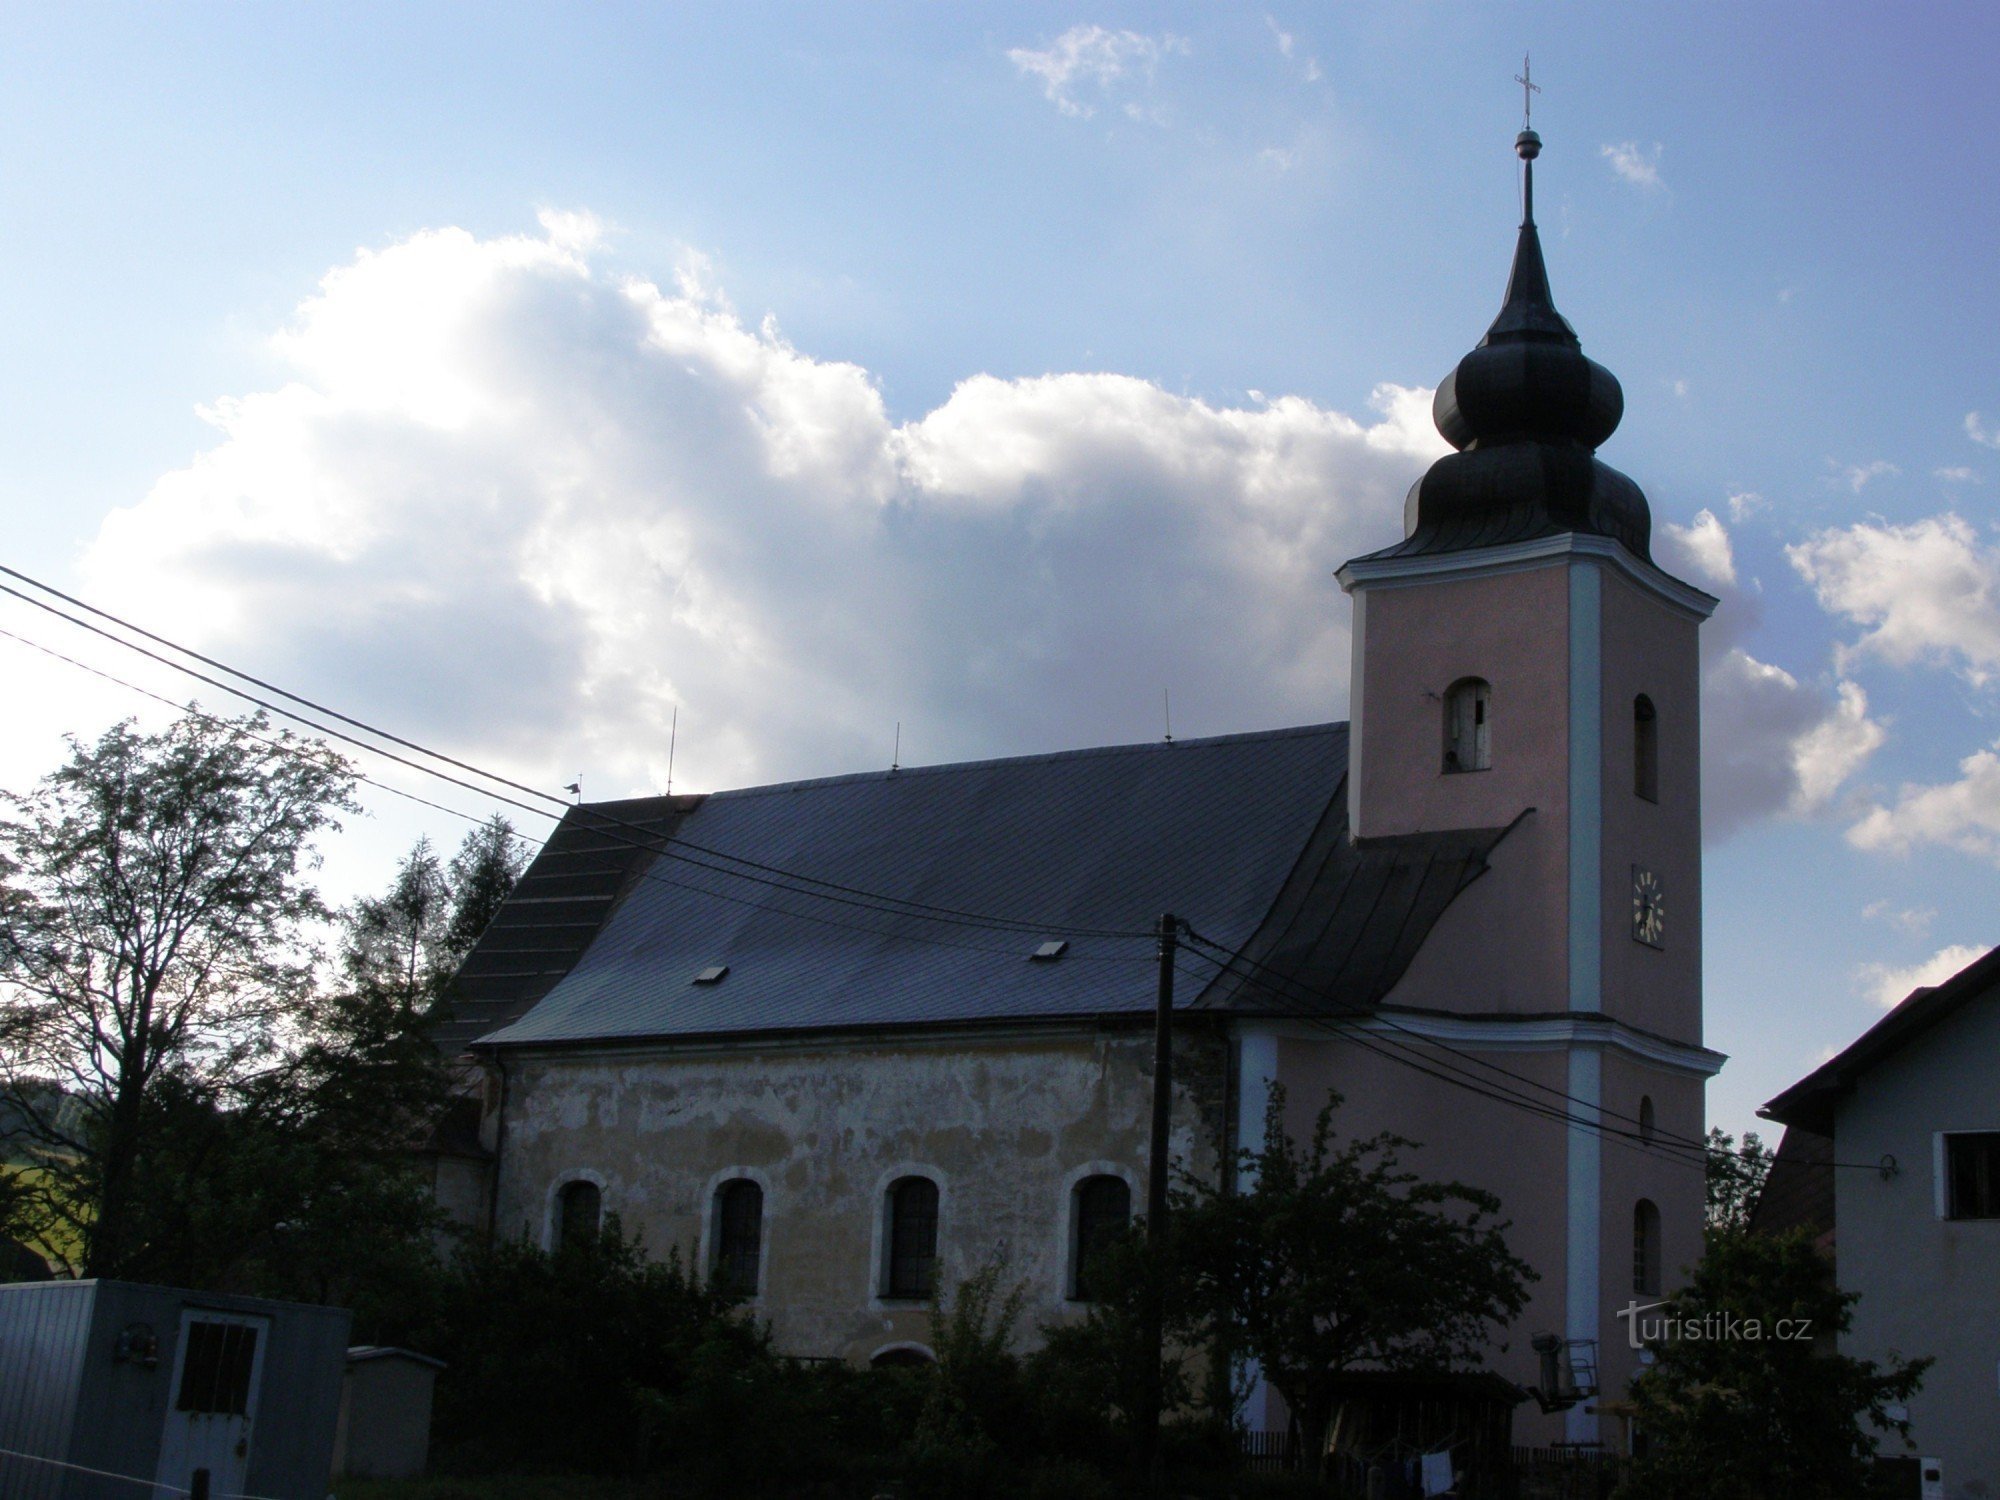 Domašov - St. Johannes Døberen